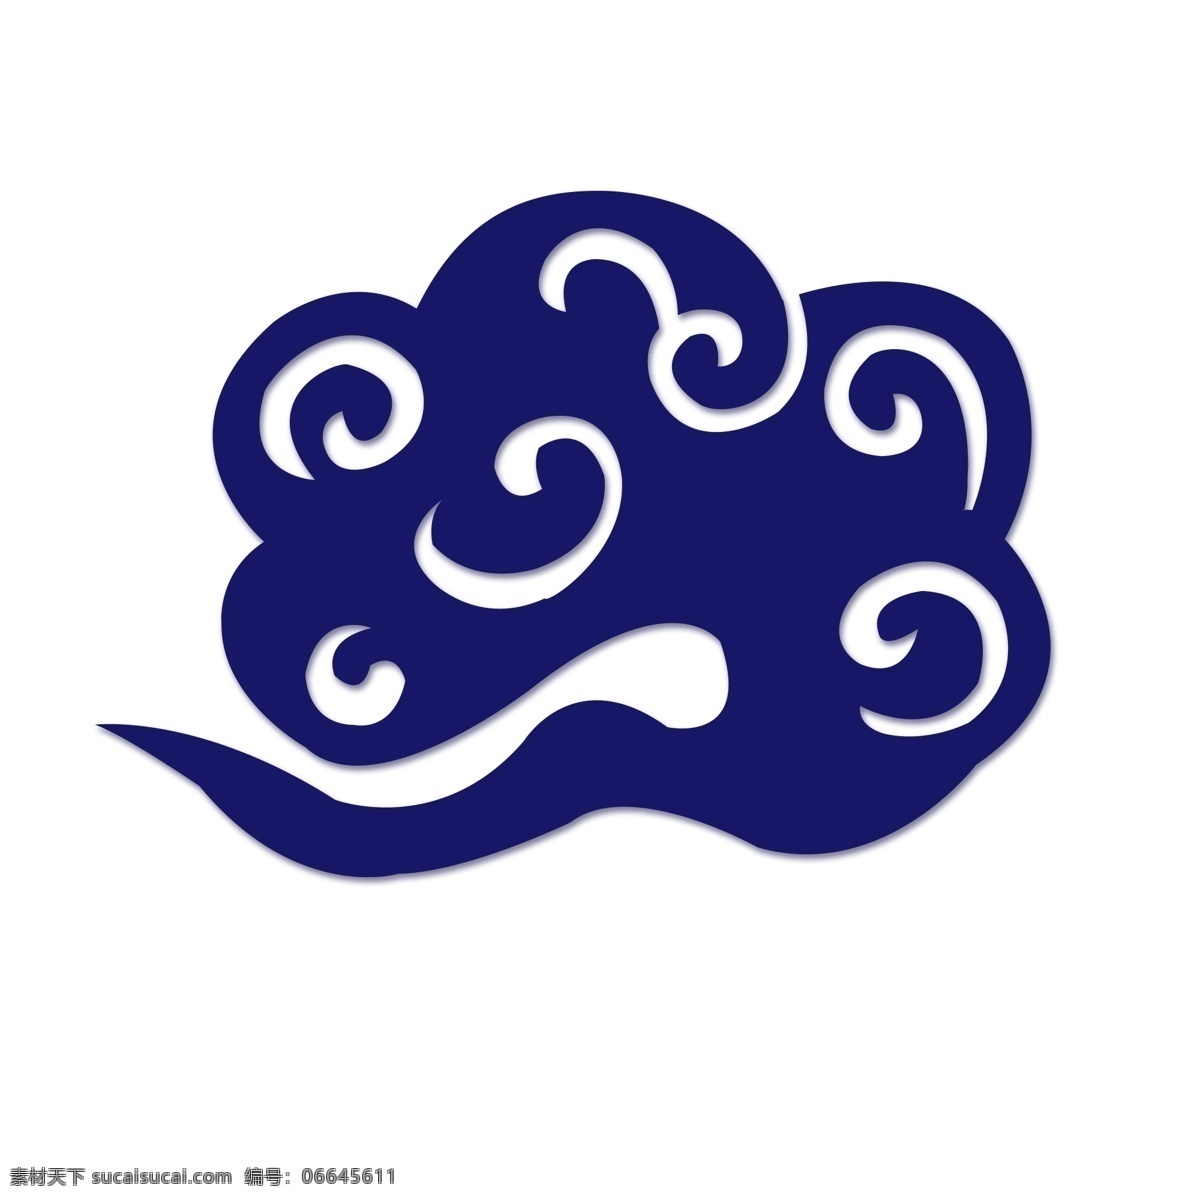 中国 风 传统 蓝色 祥云 图案 套 图 古典 花纹 商用 古典花纹 中国风 云 传统元素 可商用 矢量 蓝色祥云 云朵 装饰图案